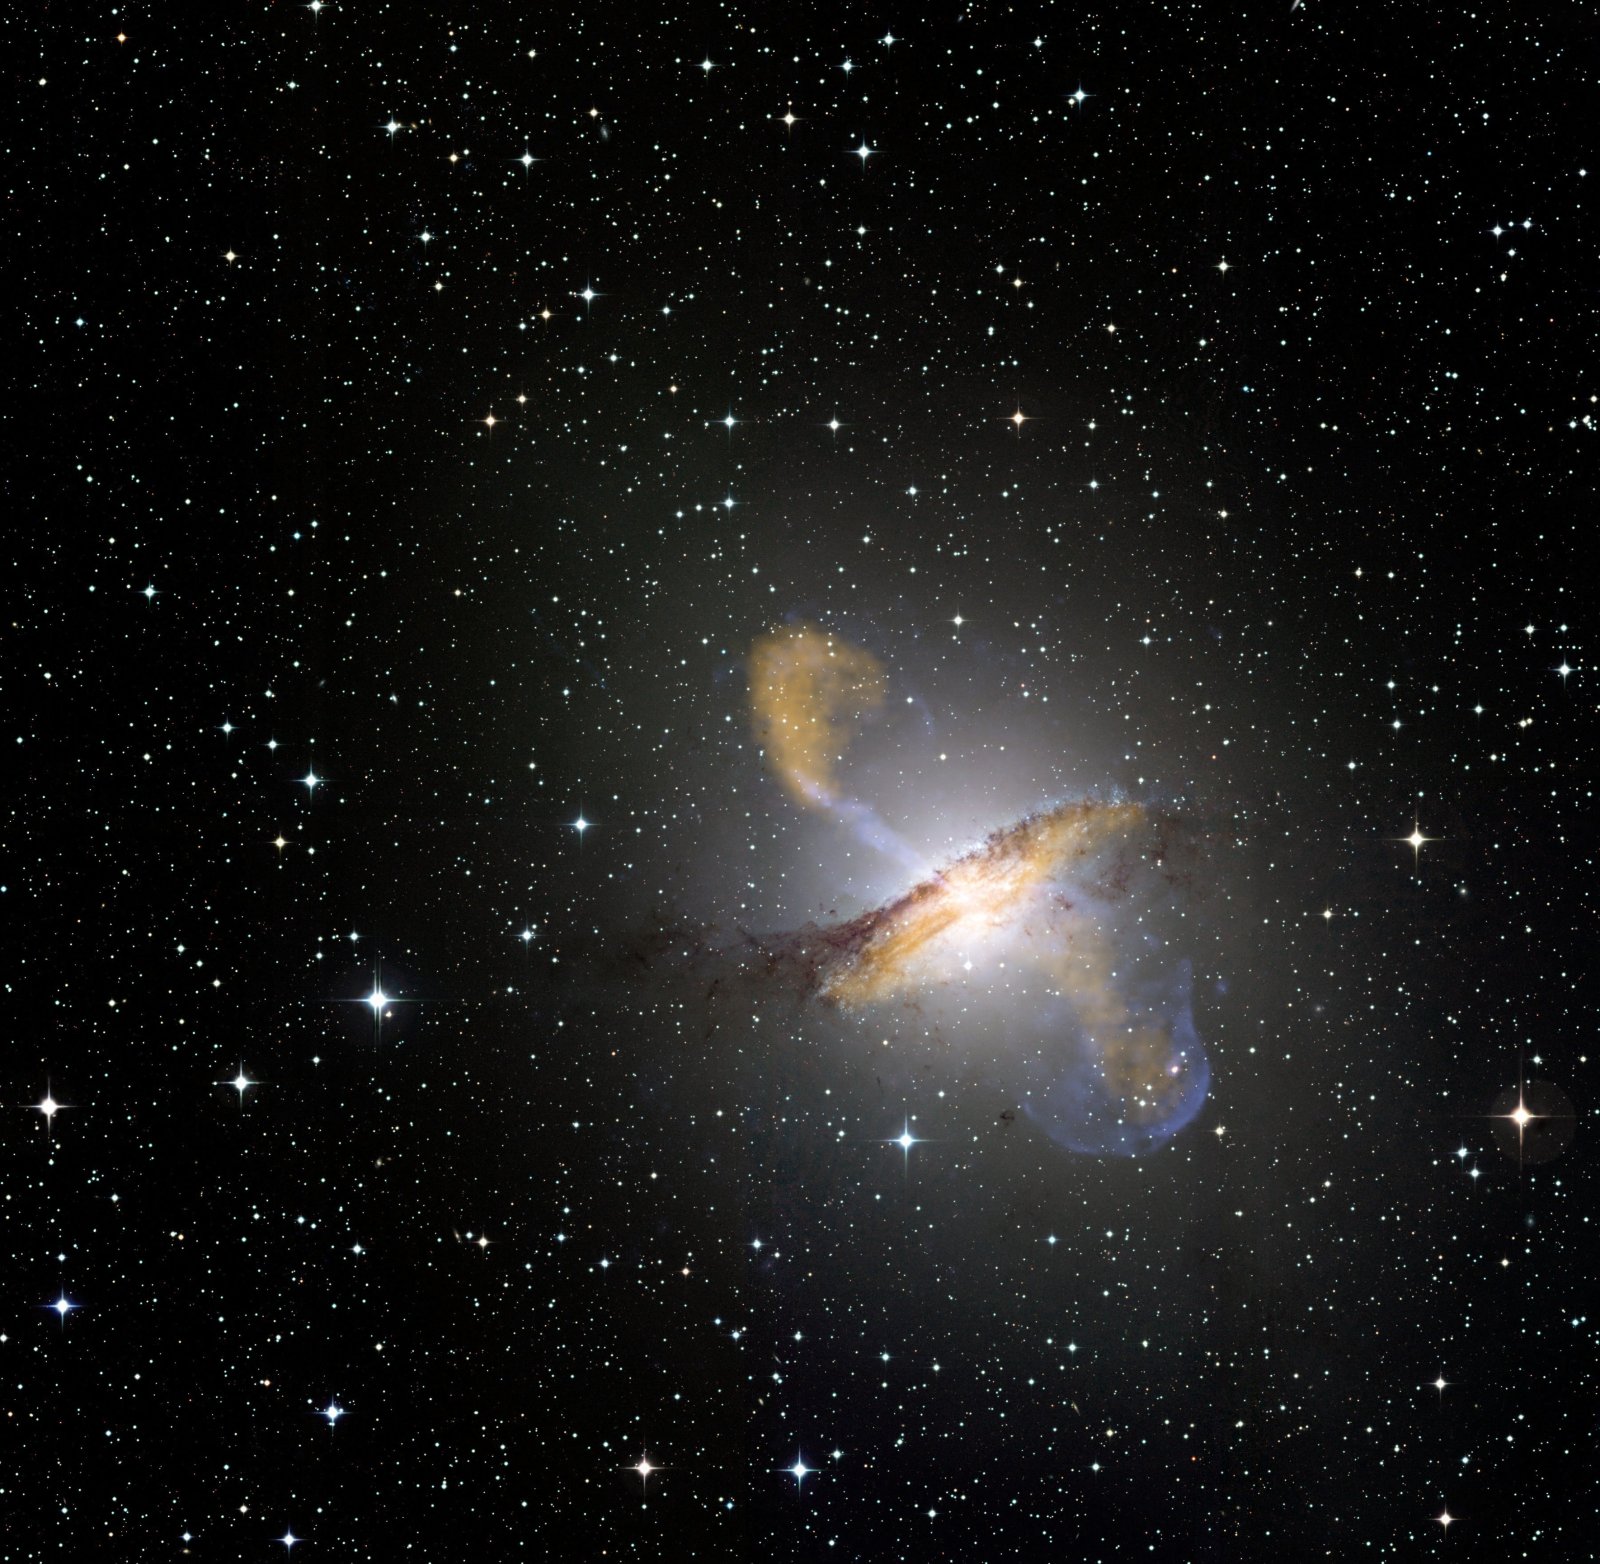 Une image de Centaurus A, révélant les jets émis par le très actif trou noir central de la galaxie. Ceci est une image composite obtenue avec trois différents instruments, fonctionnant à différentes longueurs d'onde. Les données submillimétriques à 870 microns de l’instrument Laboc sur Apex sont montrées en orange. Les données aux rayons X de Chandra sont montrées en bleu. Les données de lumière visible du Wide Field Imager (WFI) du télescope MPG-ESO de 2,2 mètres situé à La Silla, au Chili, montrent les étoiles et la ligne de poussières caractéristique de la galaxie quasiment en couleurs « réelles ». © ESO, Nasa 